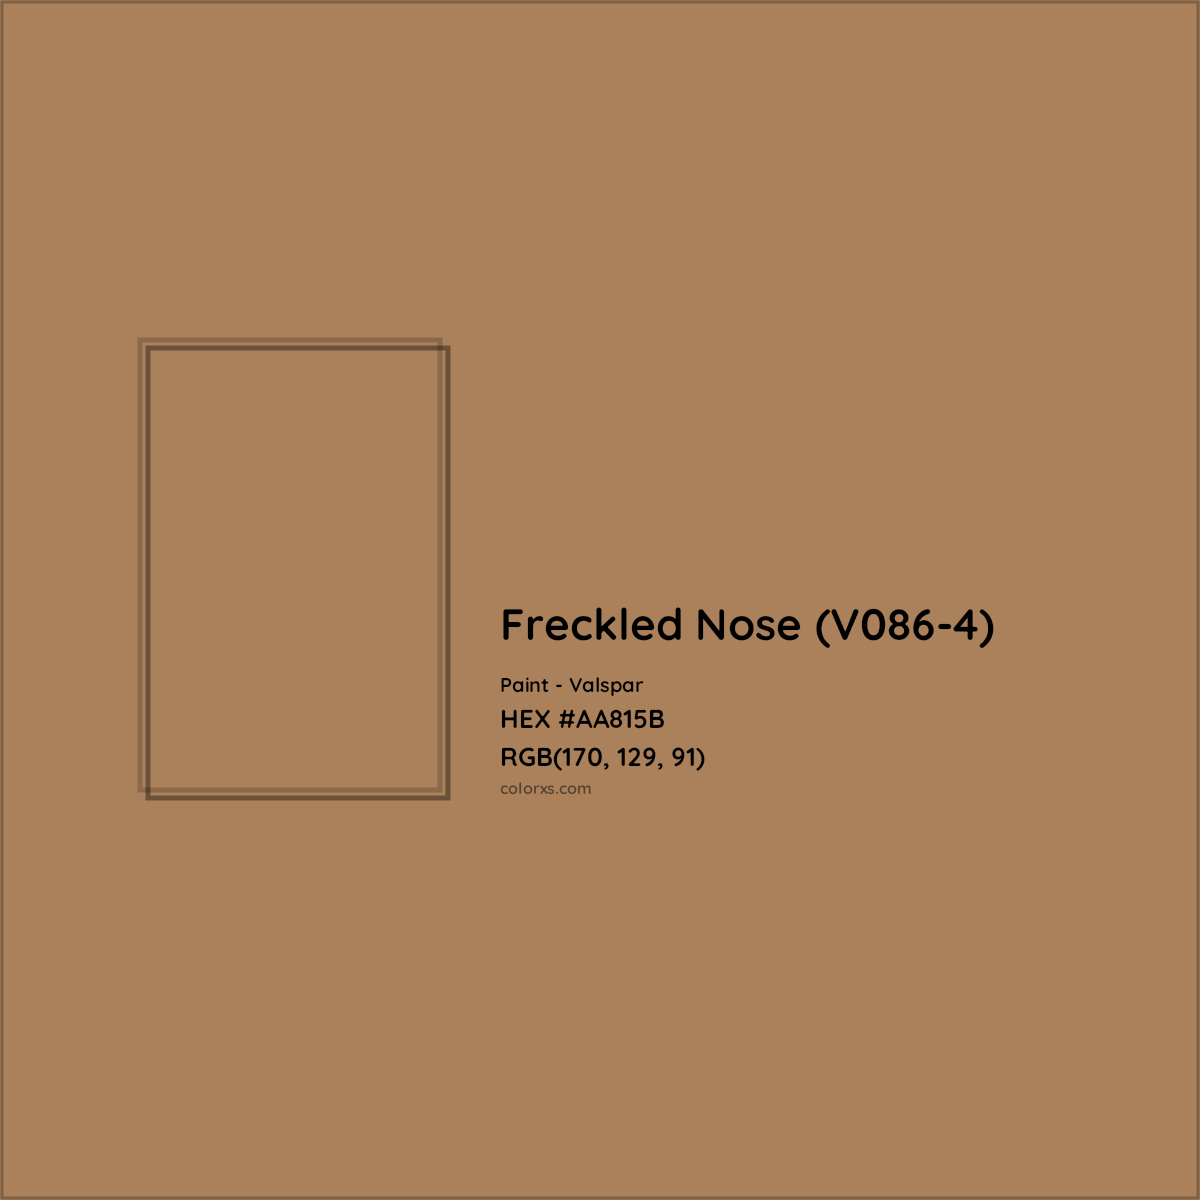 HEX #AA815B Freckled Nose (V086-4) Paint Valspar - Color Code